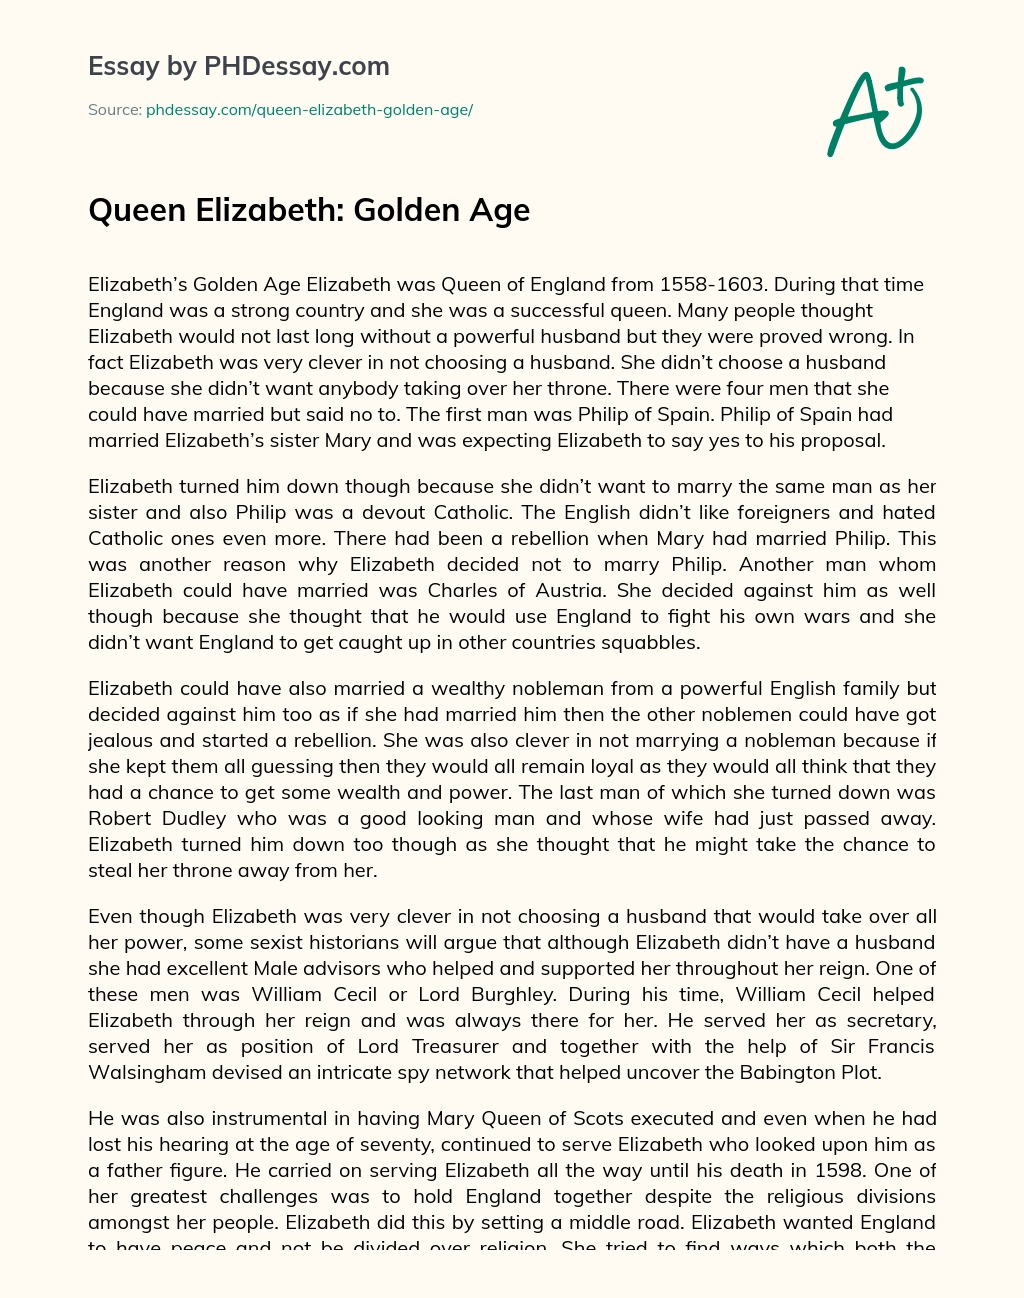 Queen Elizabeth: Golden Age essay